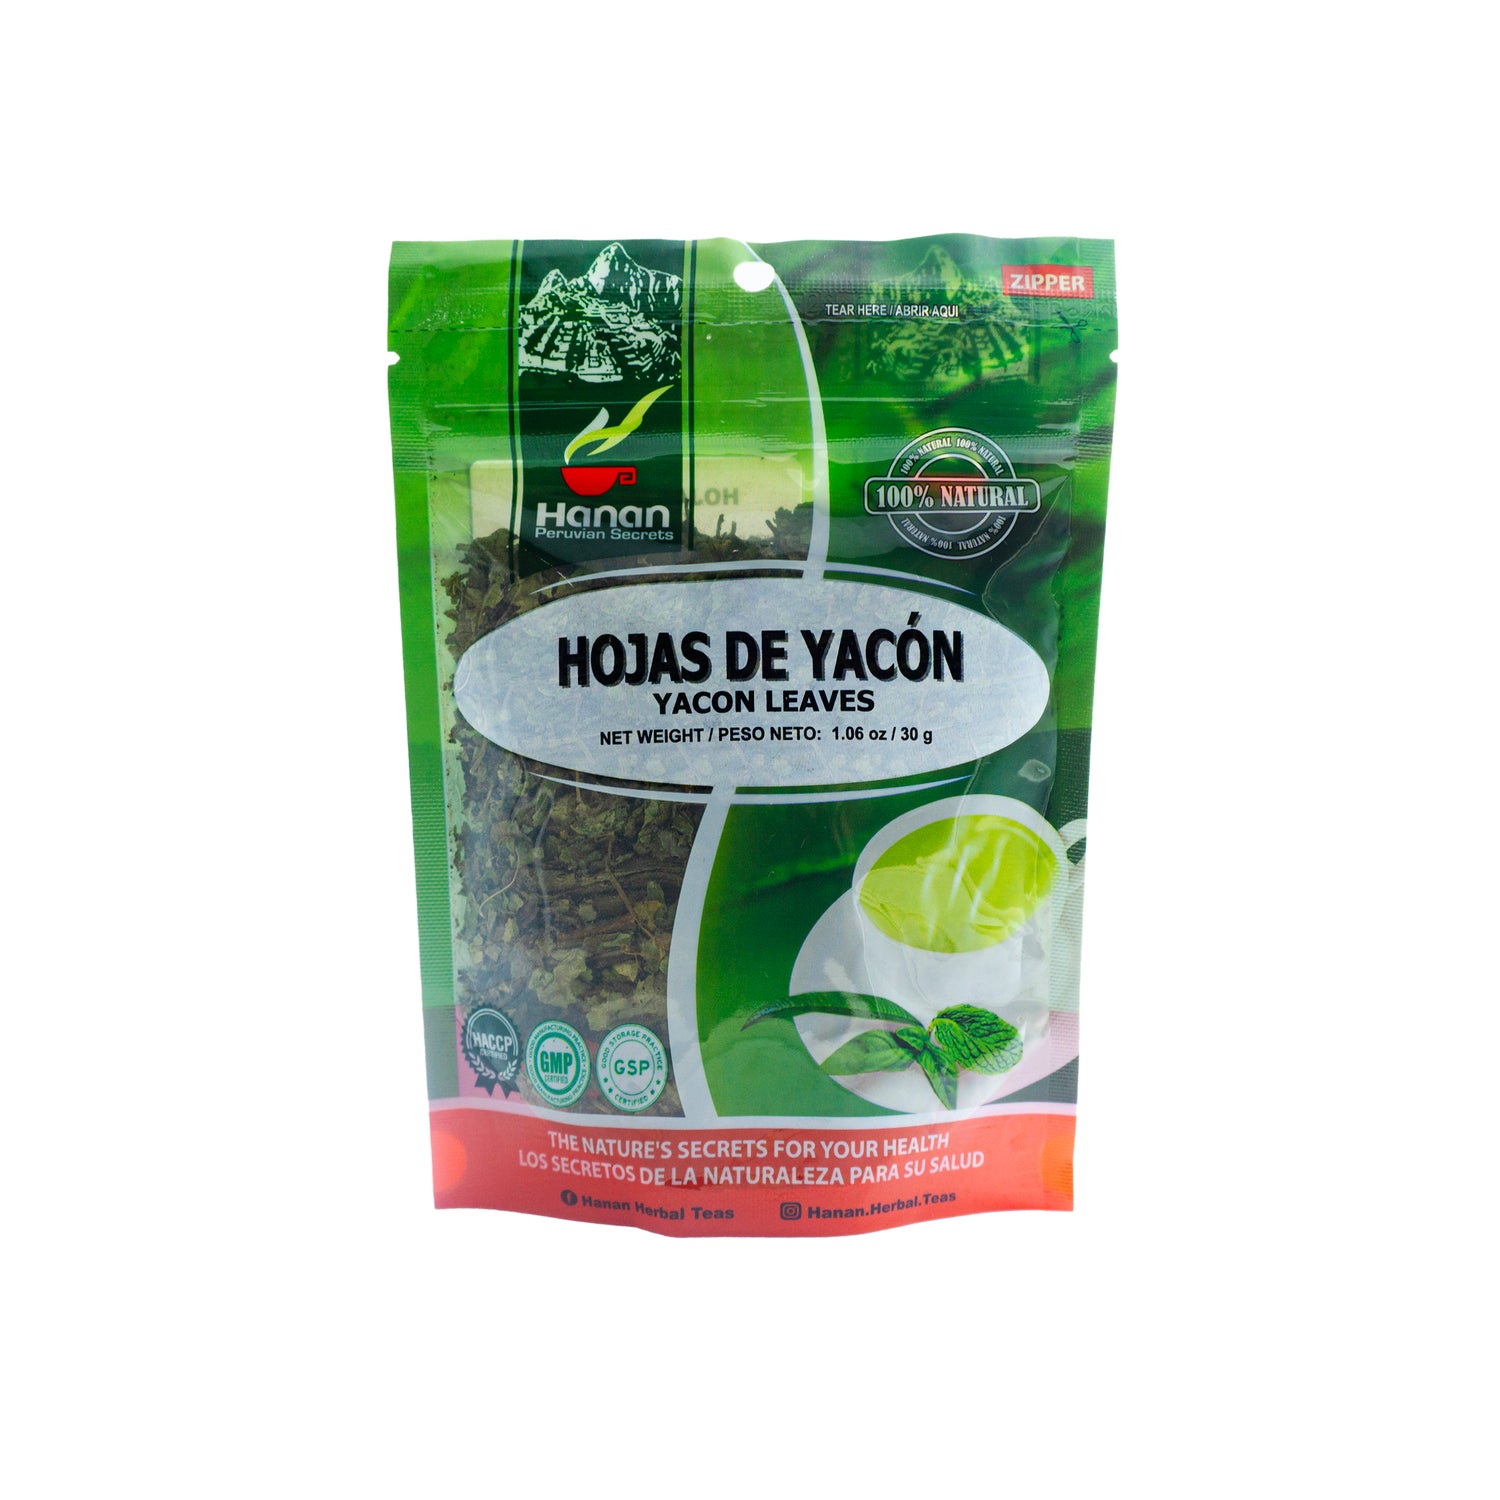 Hojas de Yacón | Yacon Loose Leaf Tea | 1.06oz (30g)